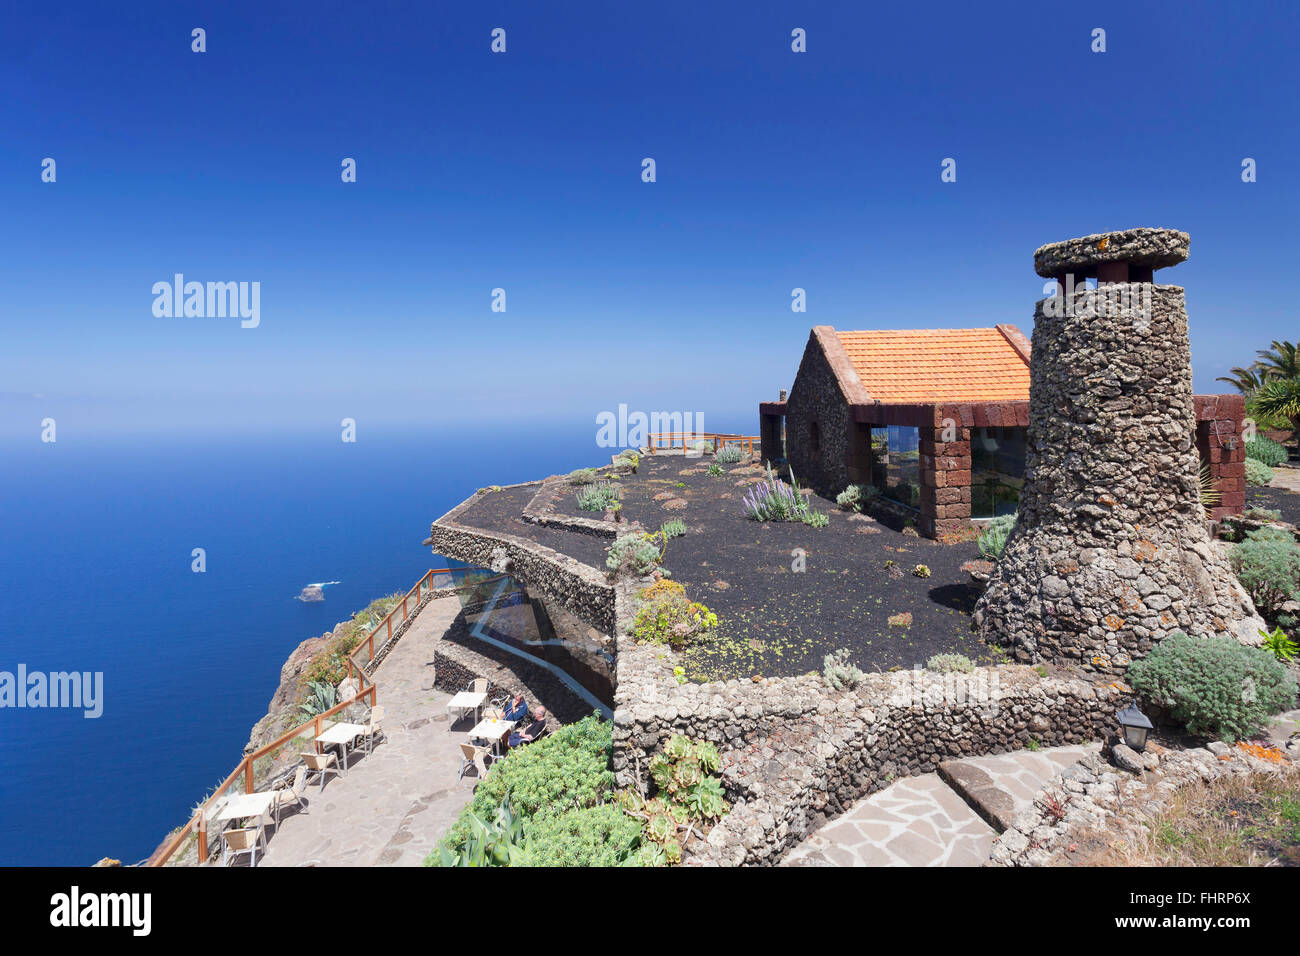 Mirador de la Pena with view restaurant, architect Cesar Manrique, El Hierro, Canary Islands, Spain Stock Photo